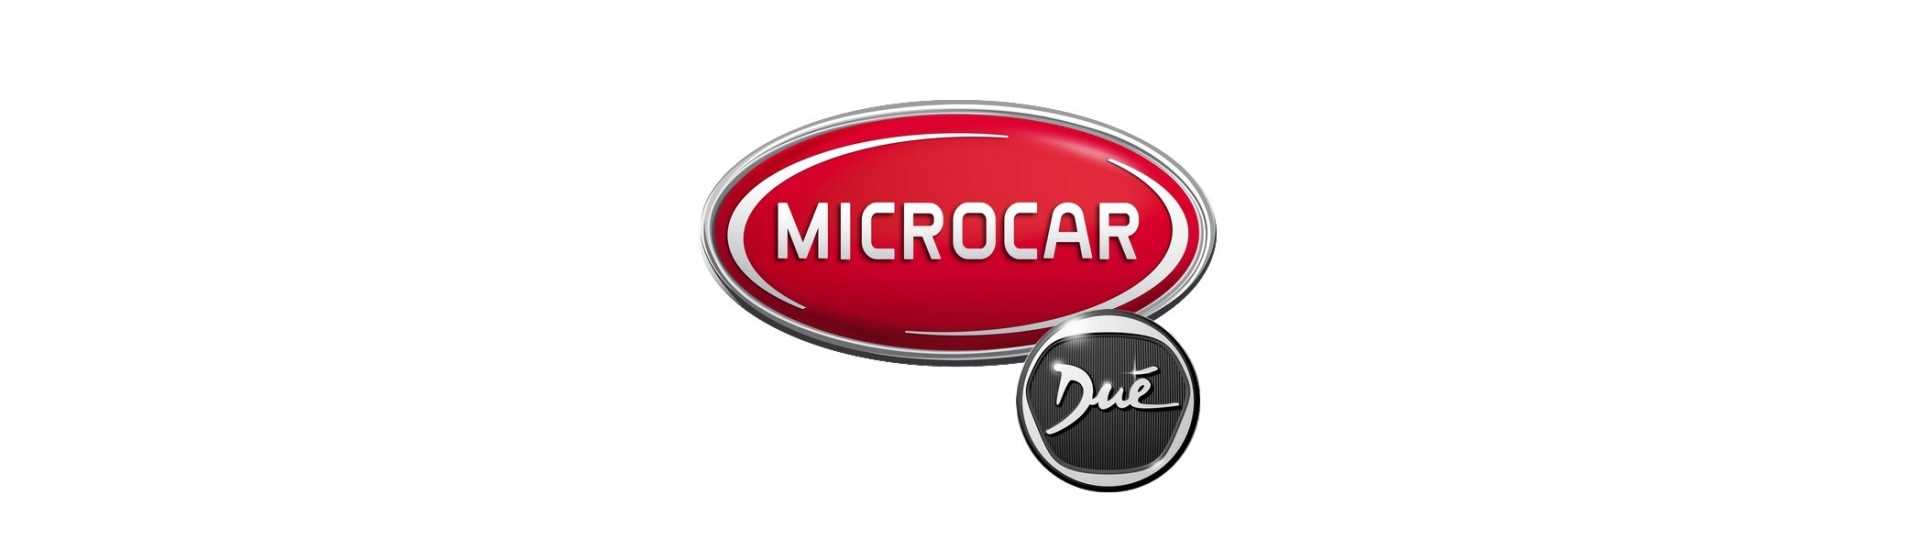 Feuer Tag zum besten Preis für Auto ohne Lizenz Microcar Dué